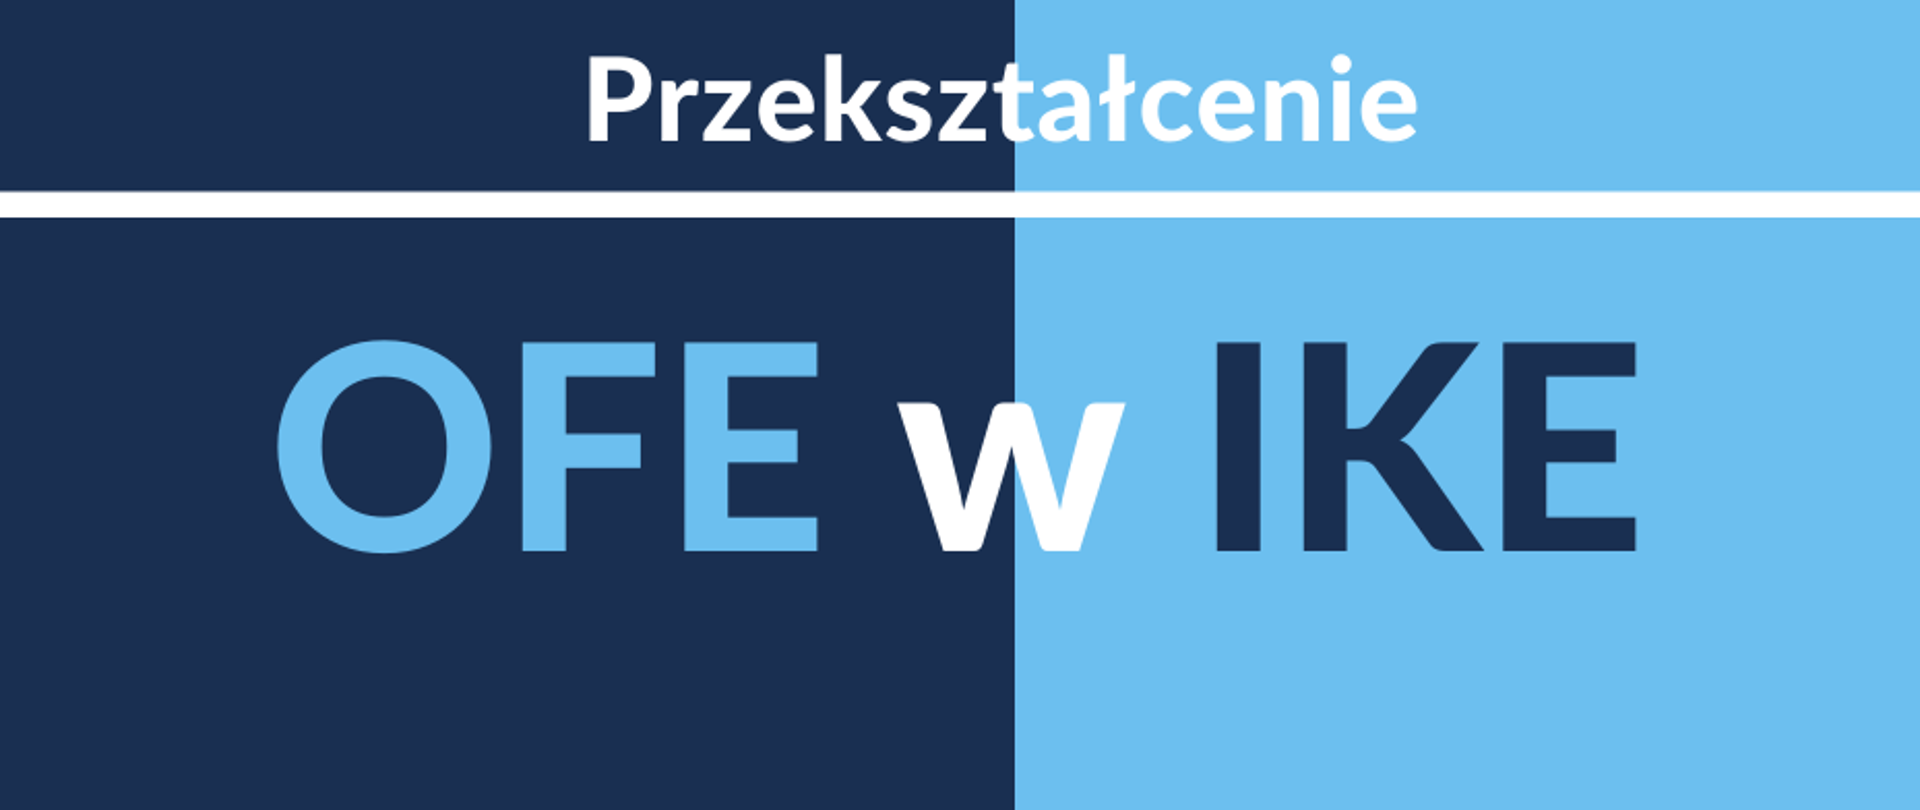 Na granatowo-niebieskim tle napis: "Grafika : Przekształcenie OFE w IKE"